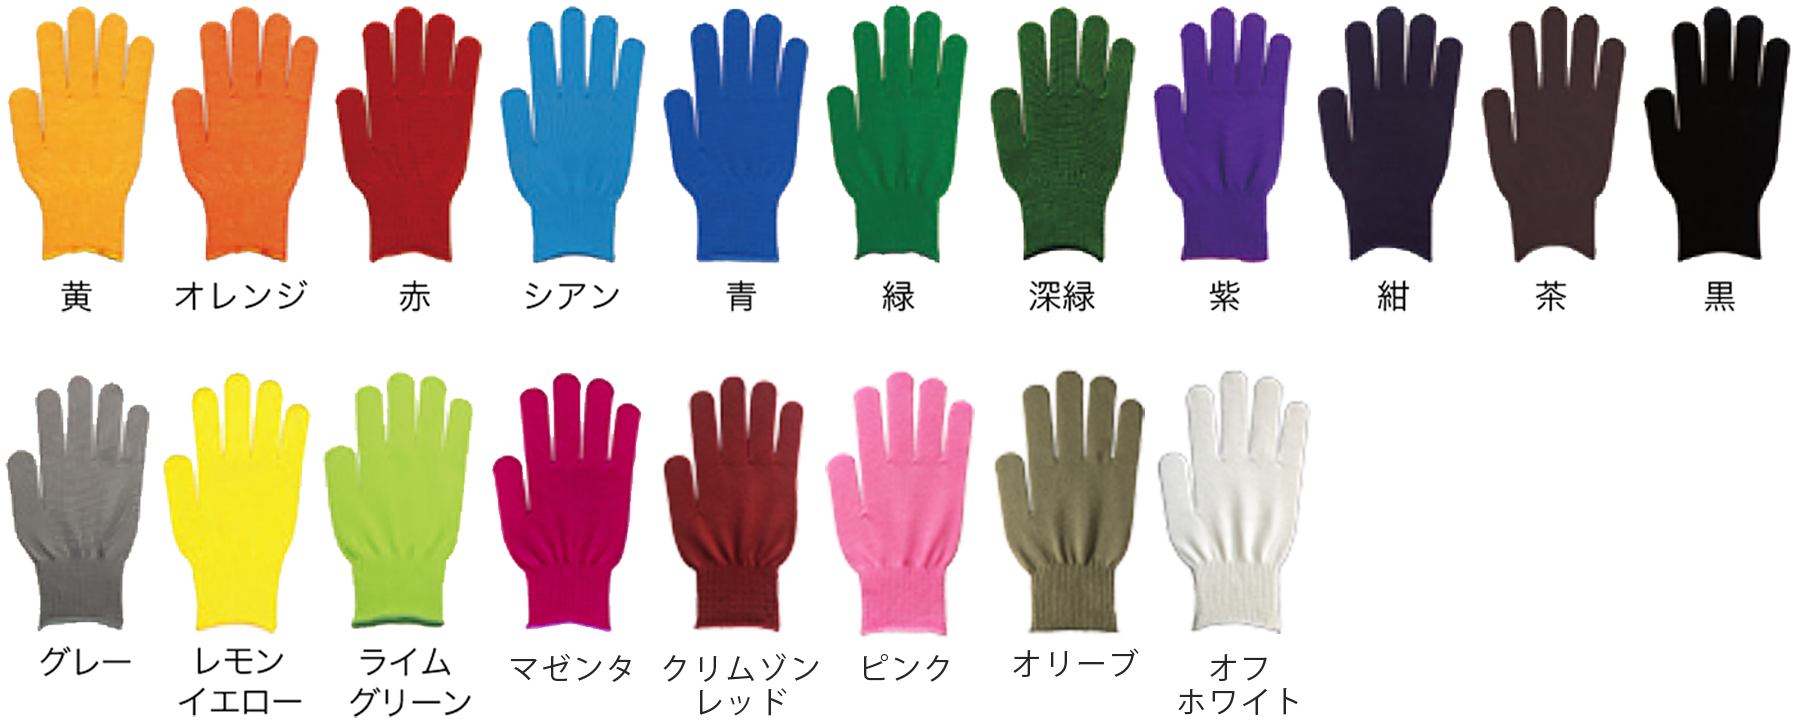 キャラクター イベント軍手 名入れ手袋を製造 印刷する軍手工場 グローブファクトリー